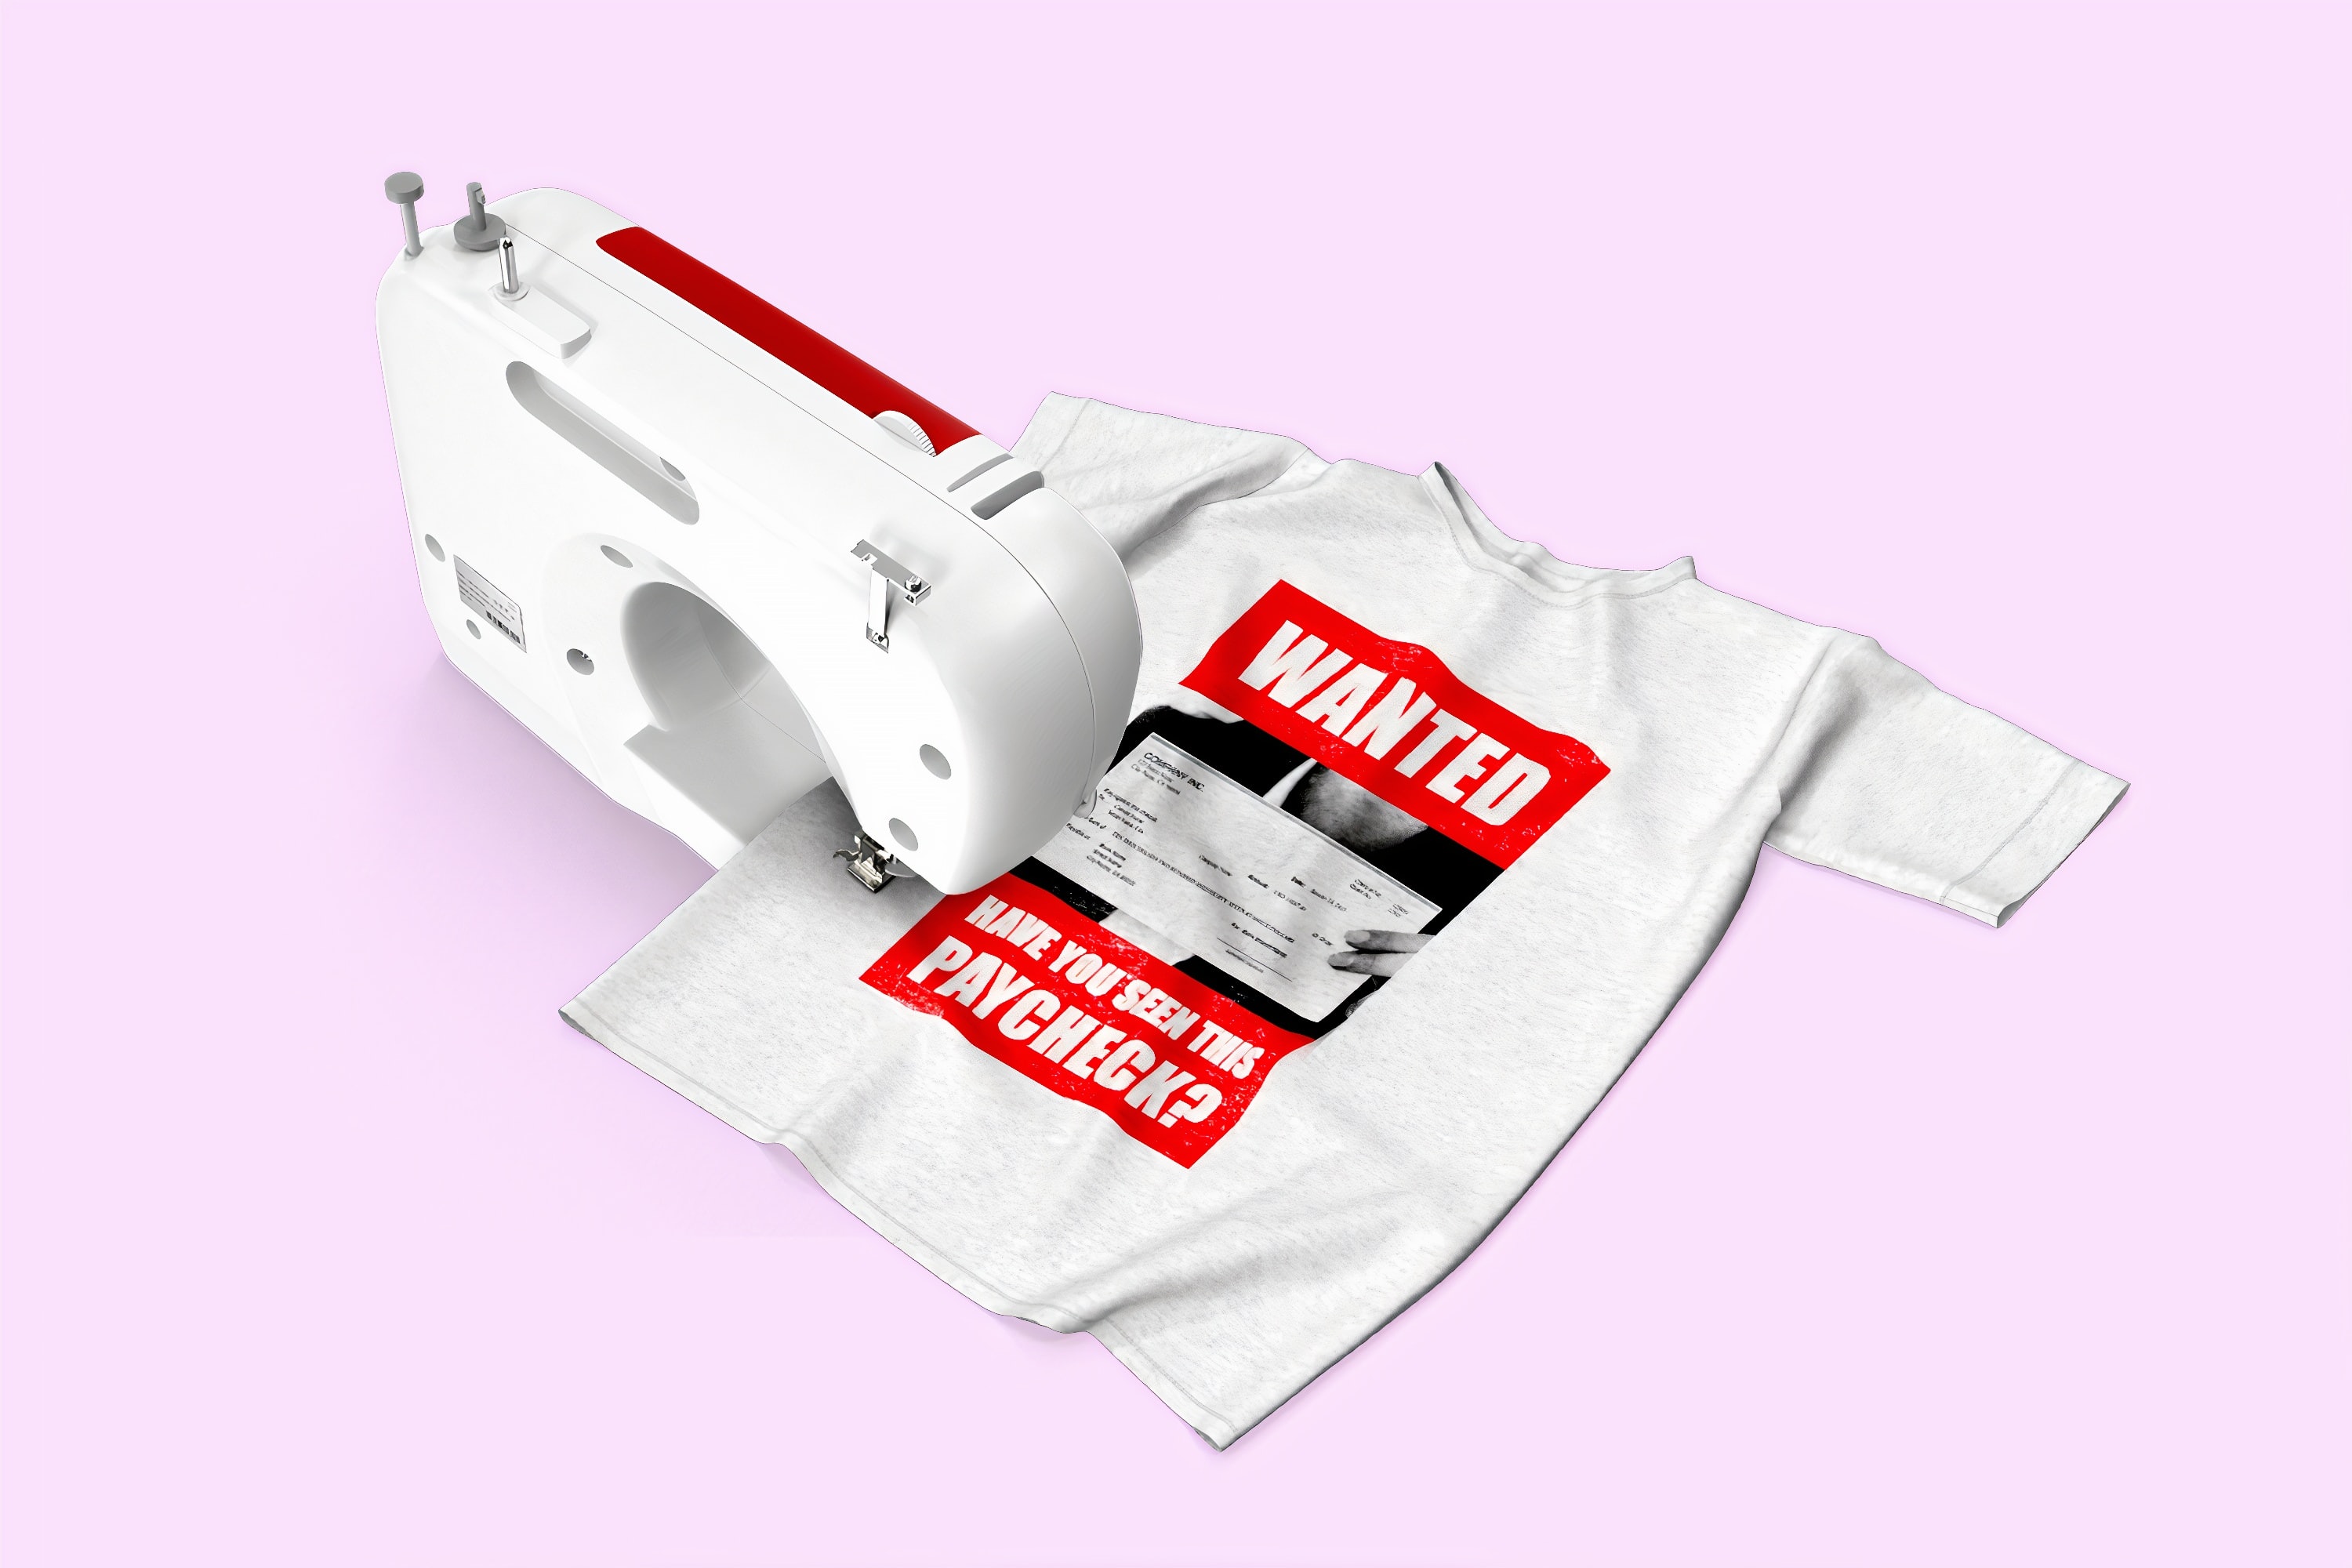 Eine Nähmaschine näht ein T-Shirt auf dem "Wanted: Have you seen this paycheck" auf Englisch steht. Übersetzt auf Deutsch: "Gesucht: Haben Sie diesen Lohzettel gesehen?"